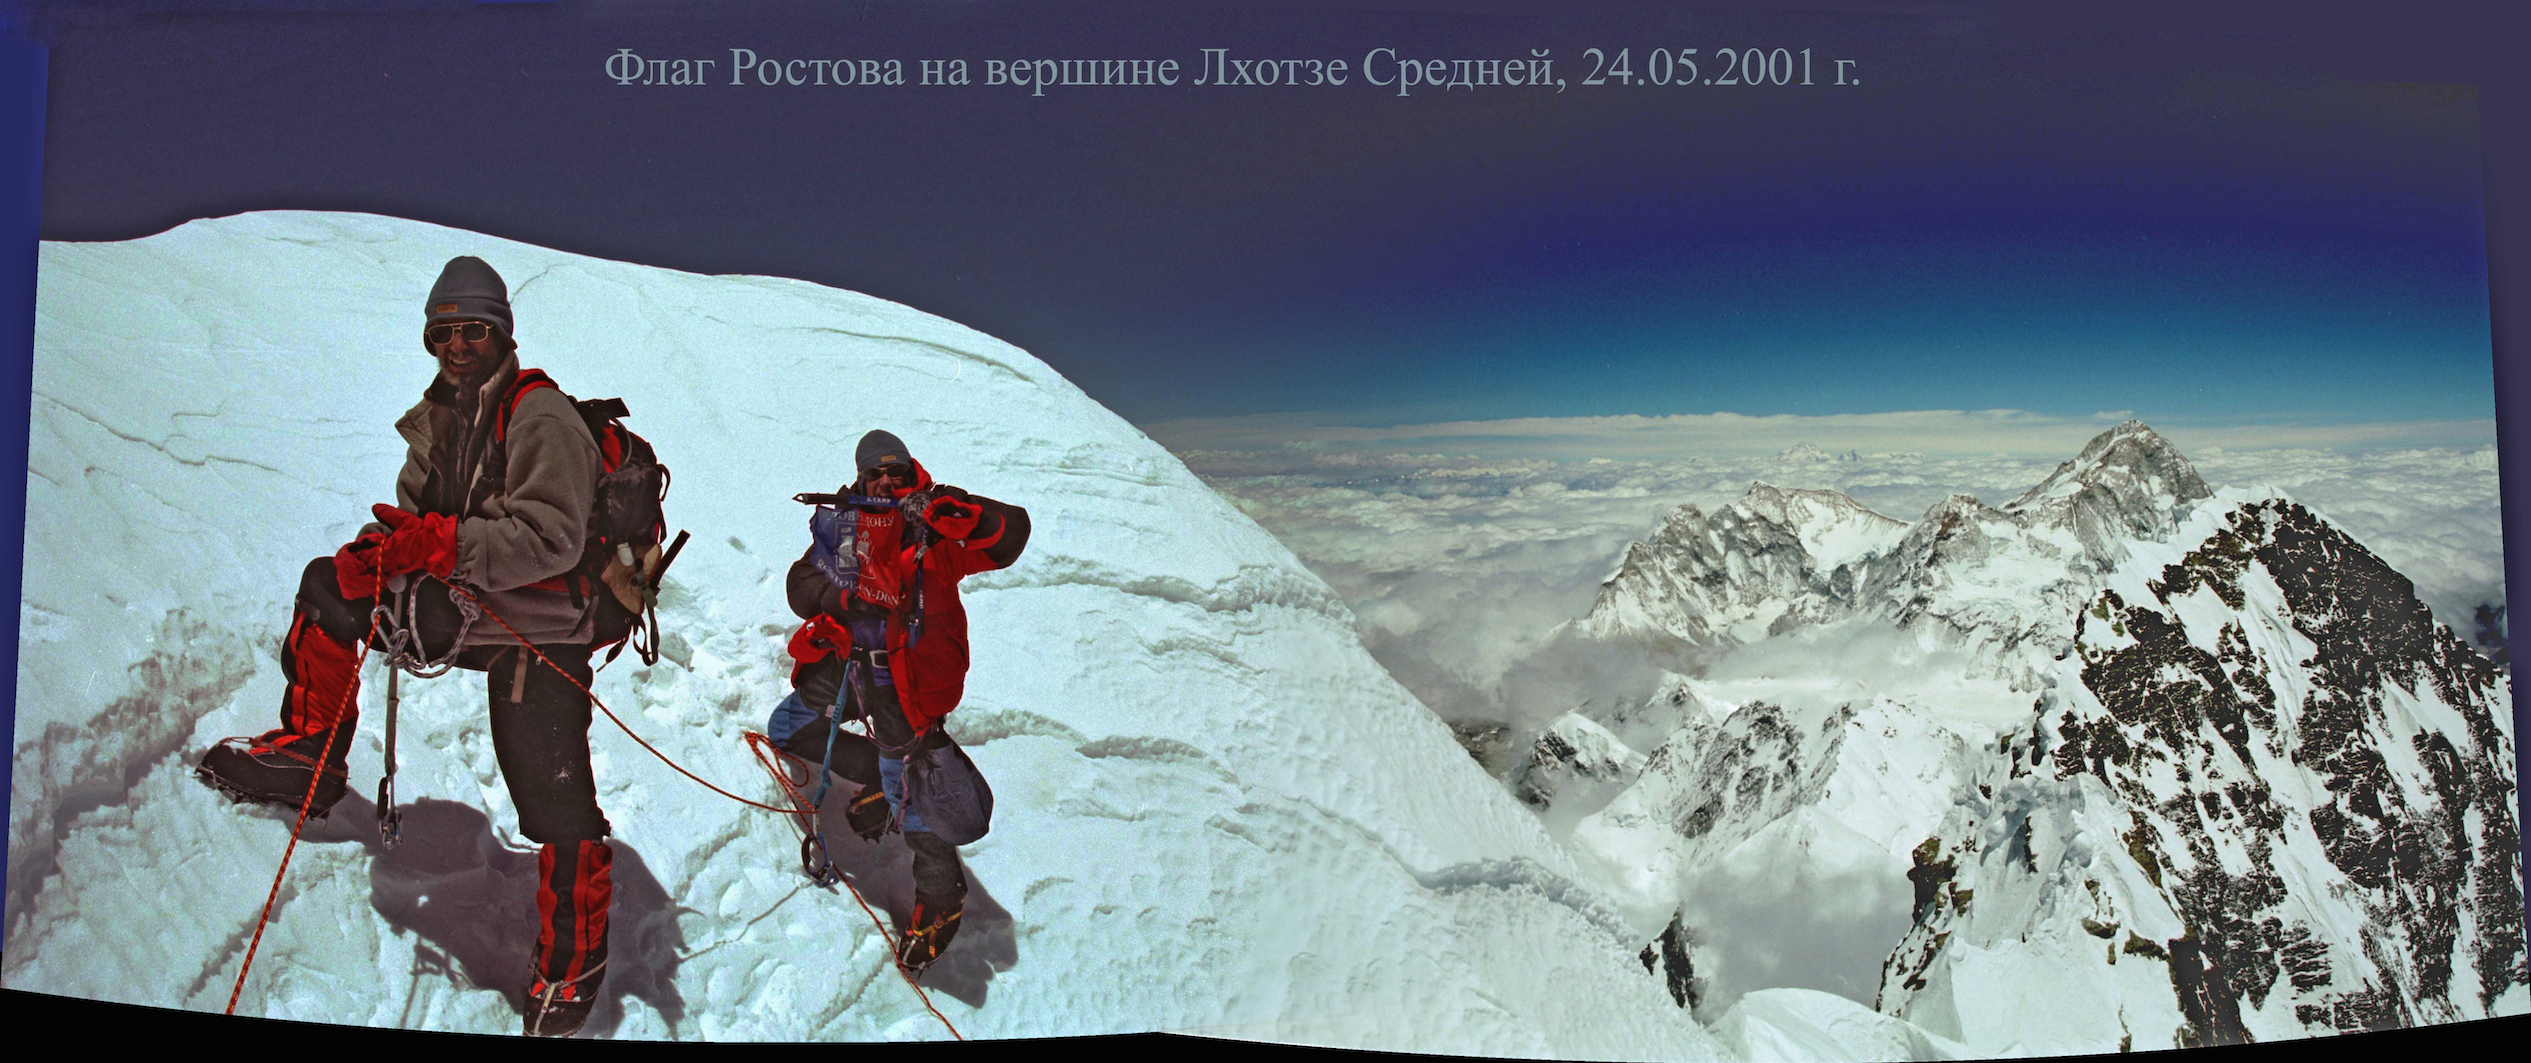 Jilin and Koshelenko on the summit, 24/05/2001